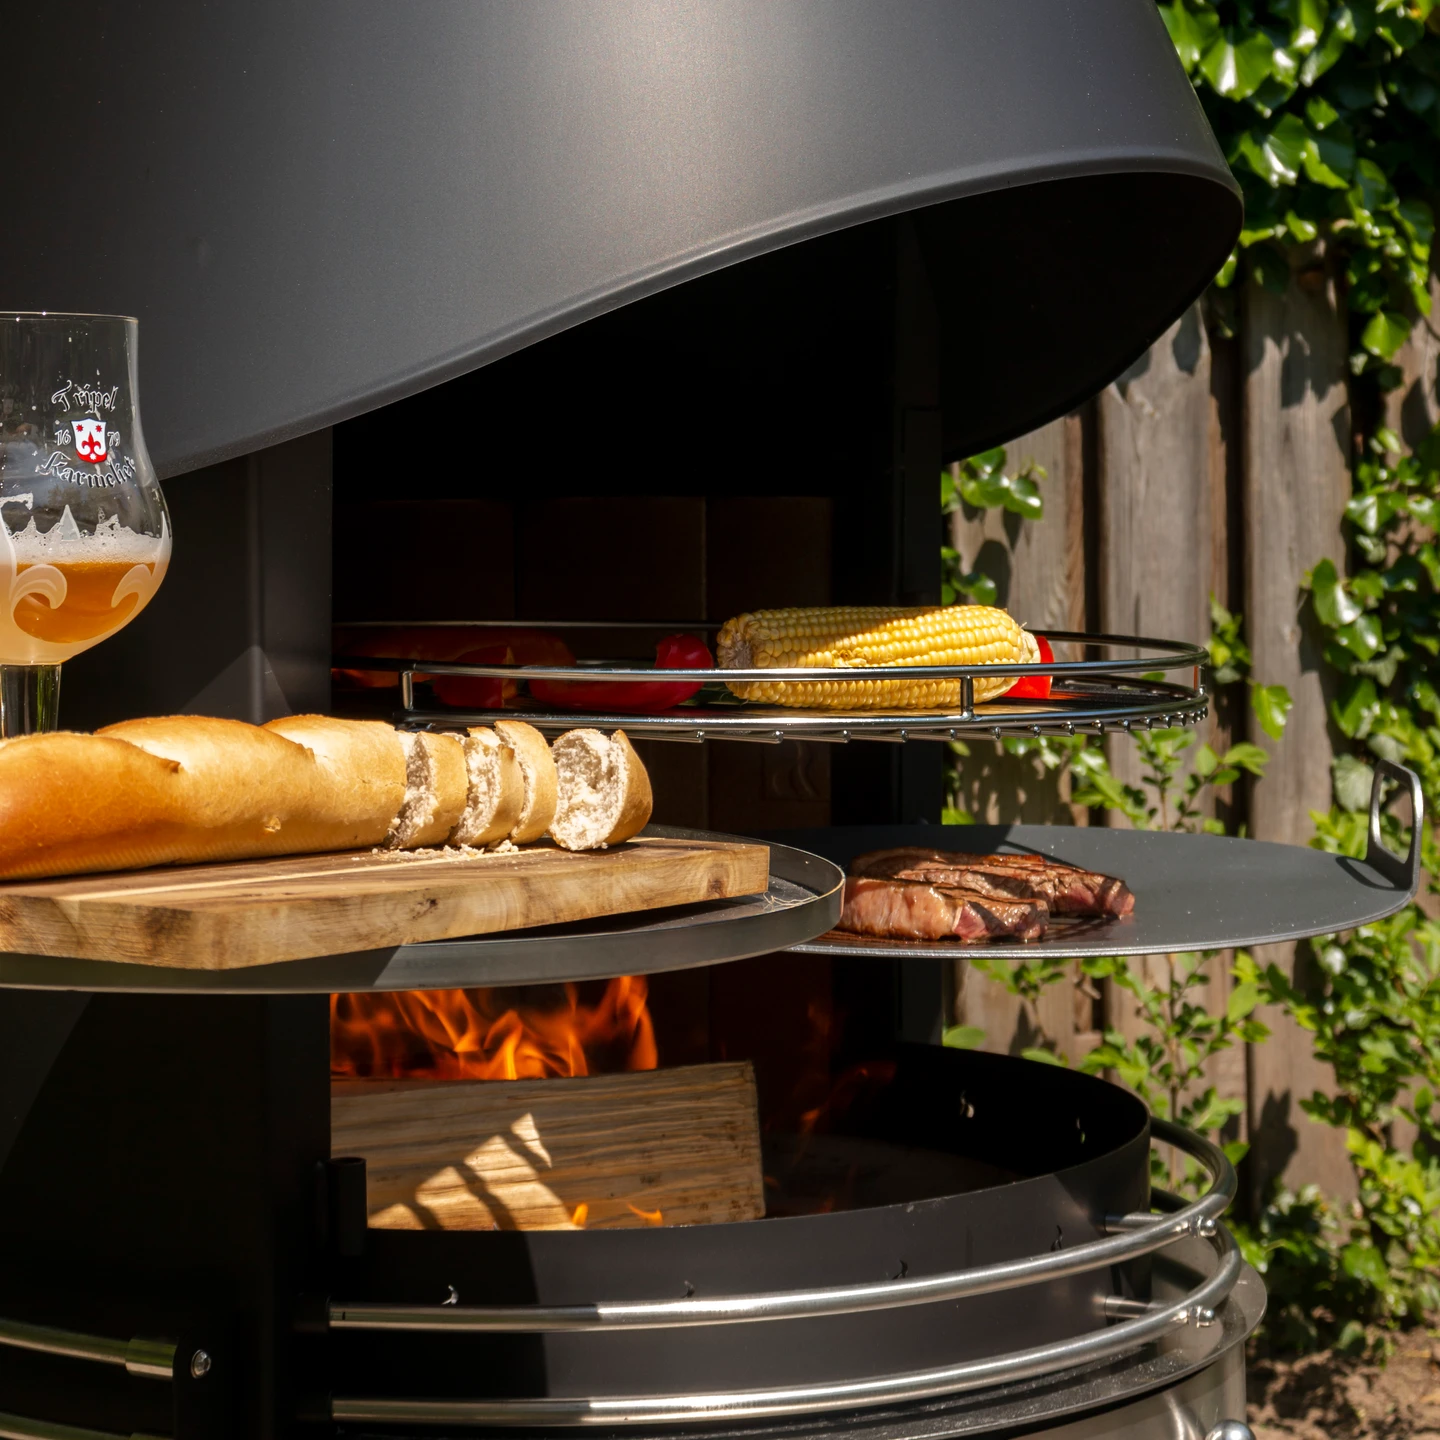 Girse Design RVS buitenhaard. Geschikt voor barbecue. Diverse mogelijkheden voor outdoorcooking. Exclusief buitenleven.